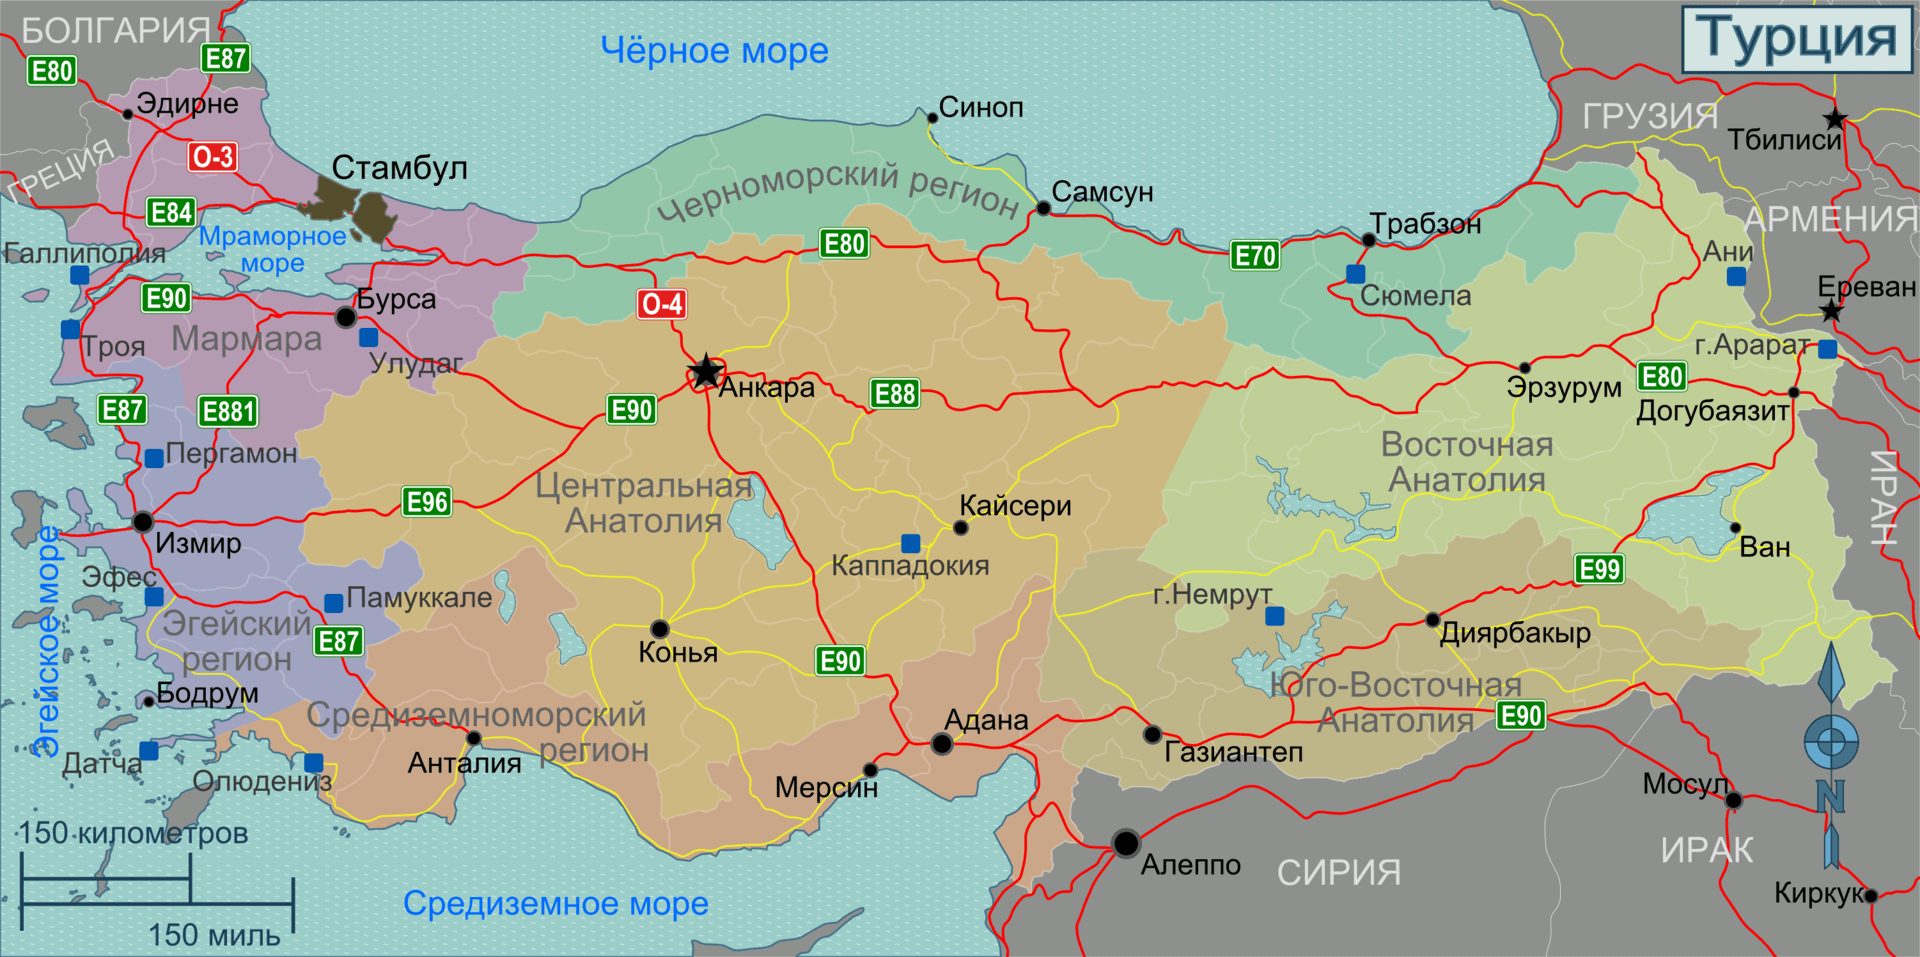 Карта турции с городами на русском и отелями на русском языке